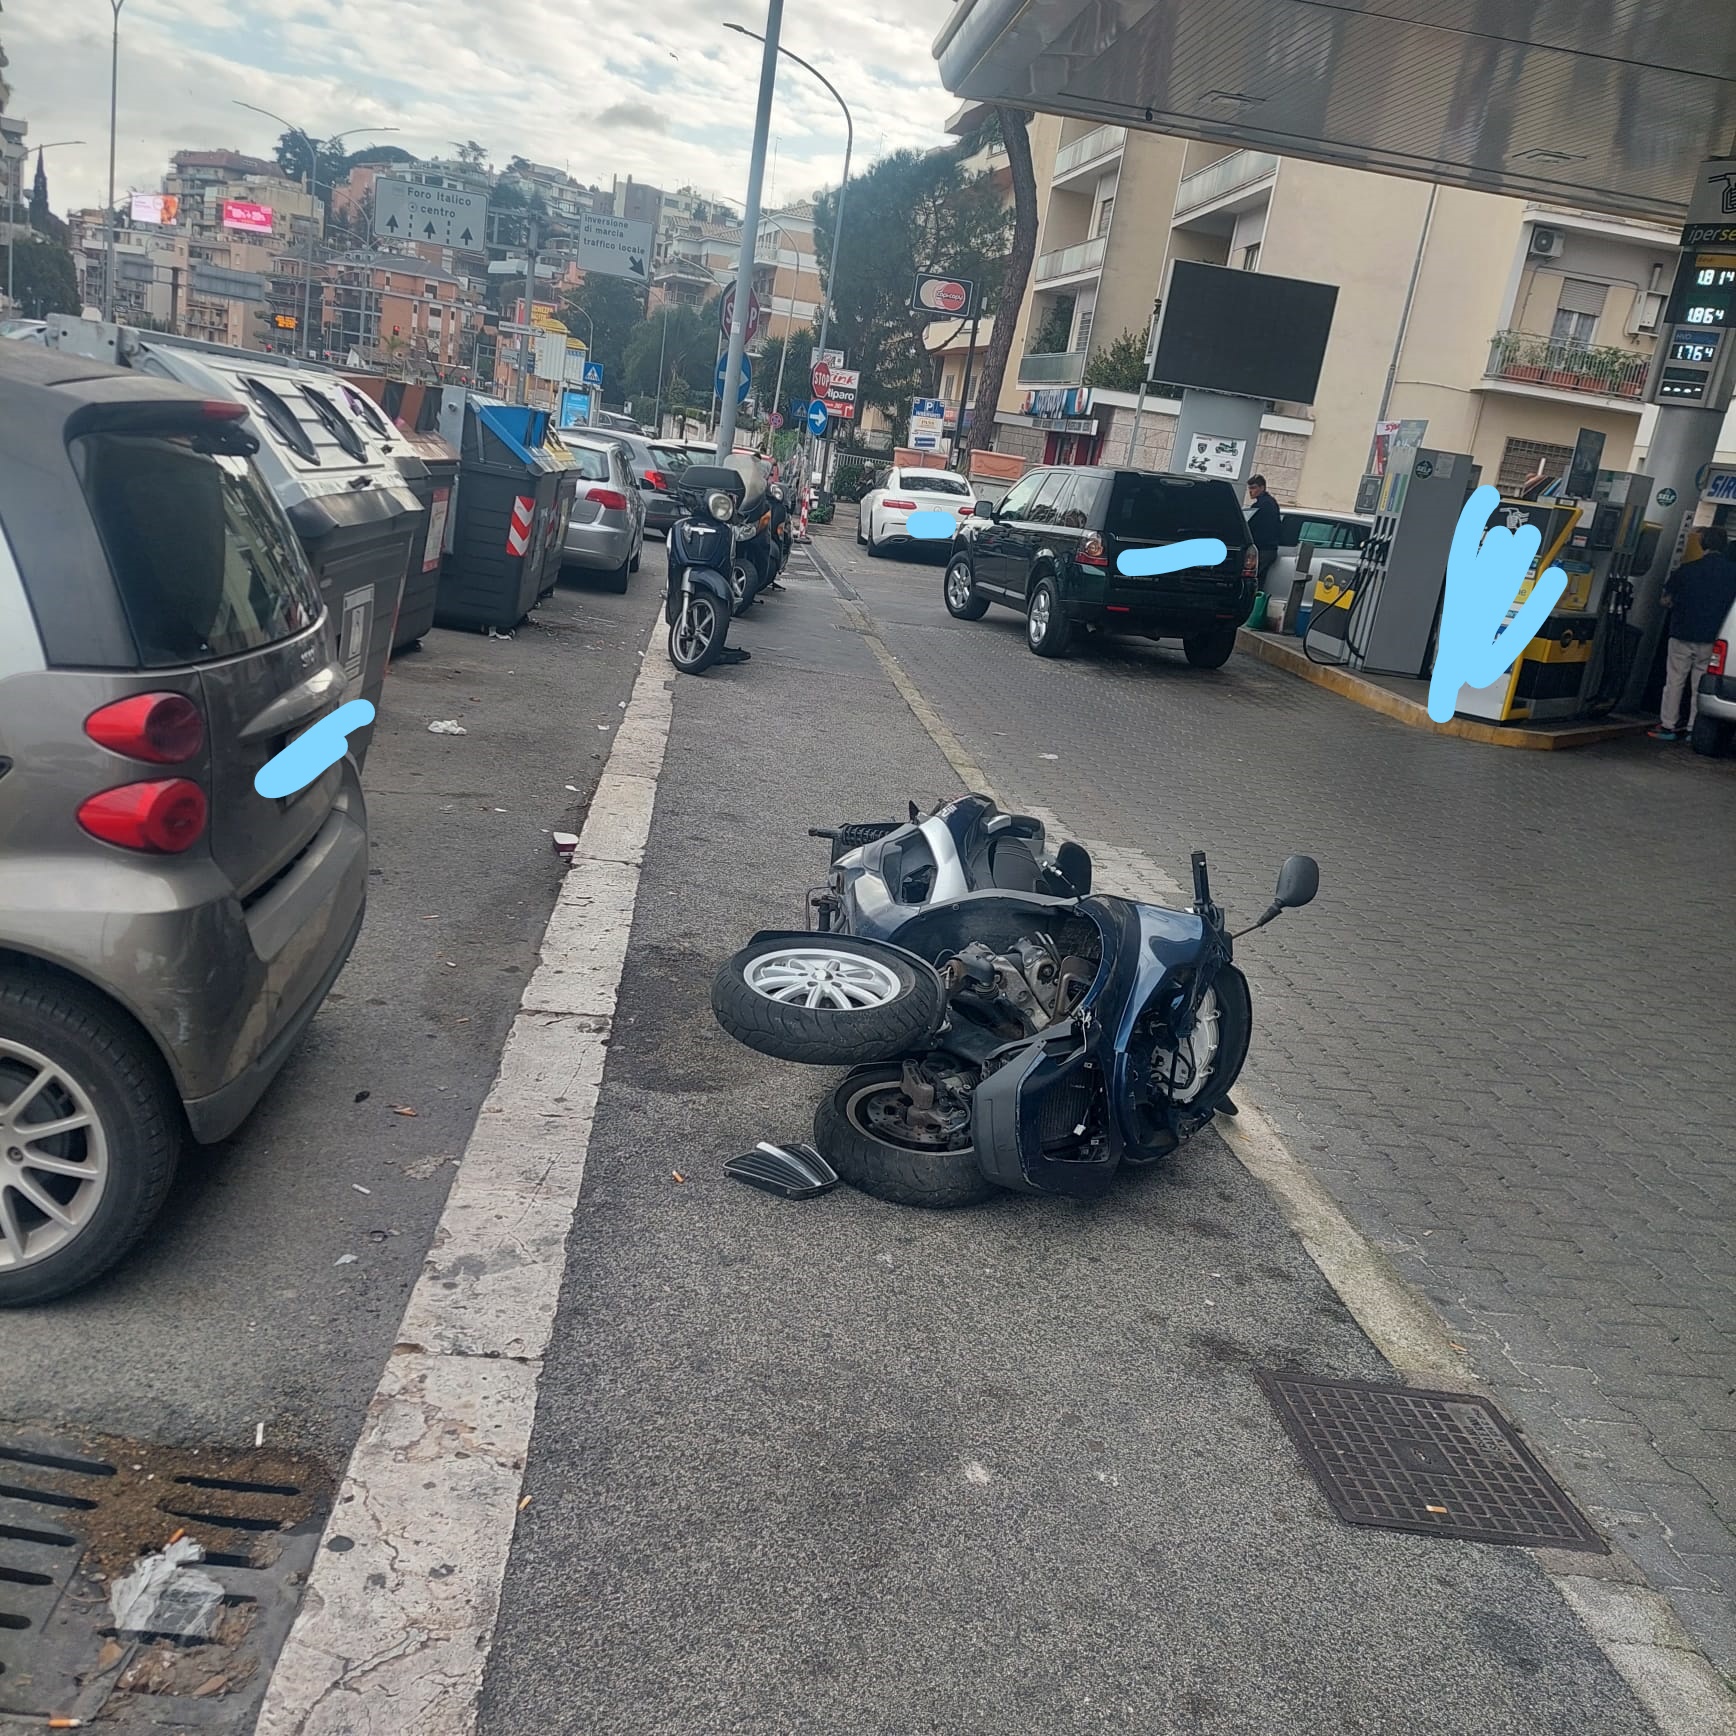 Rifiuti e scooter rubati, Roma città aperta all'abbandono lo denuncia l'Italia dei Diritti
